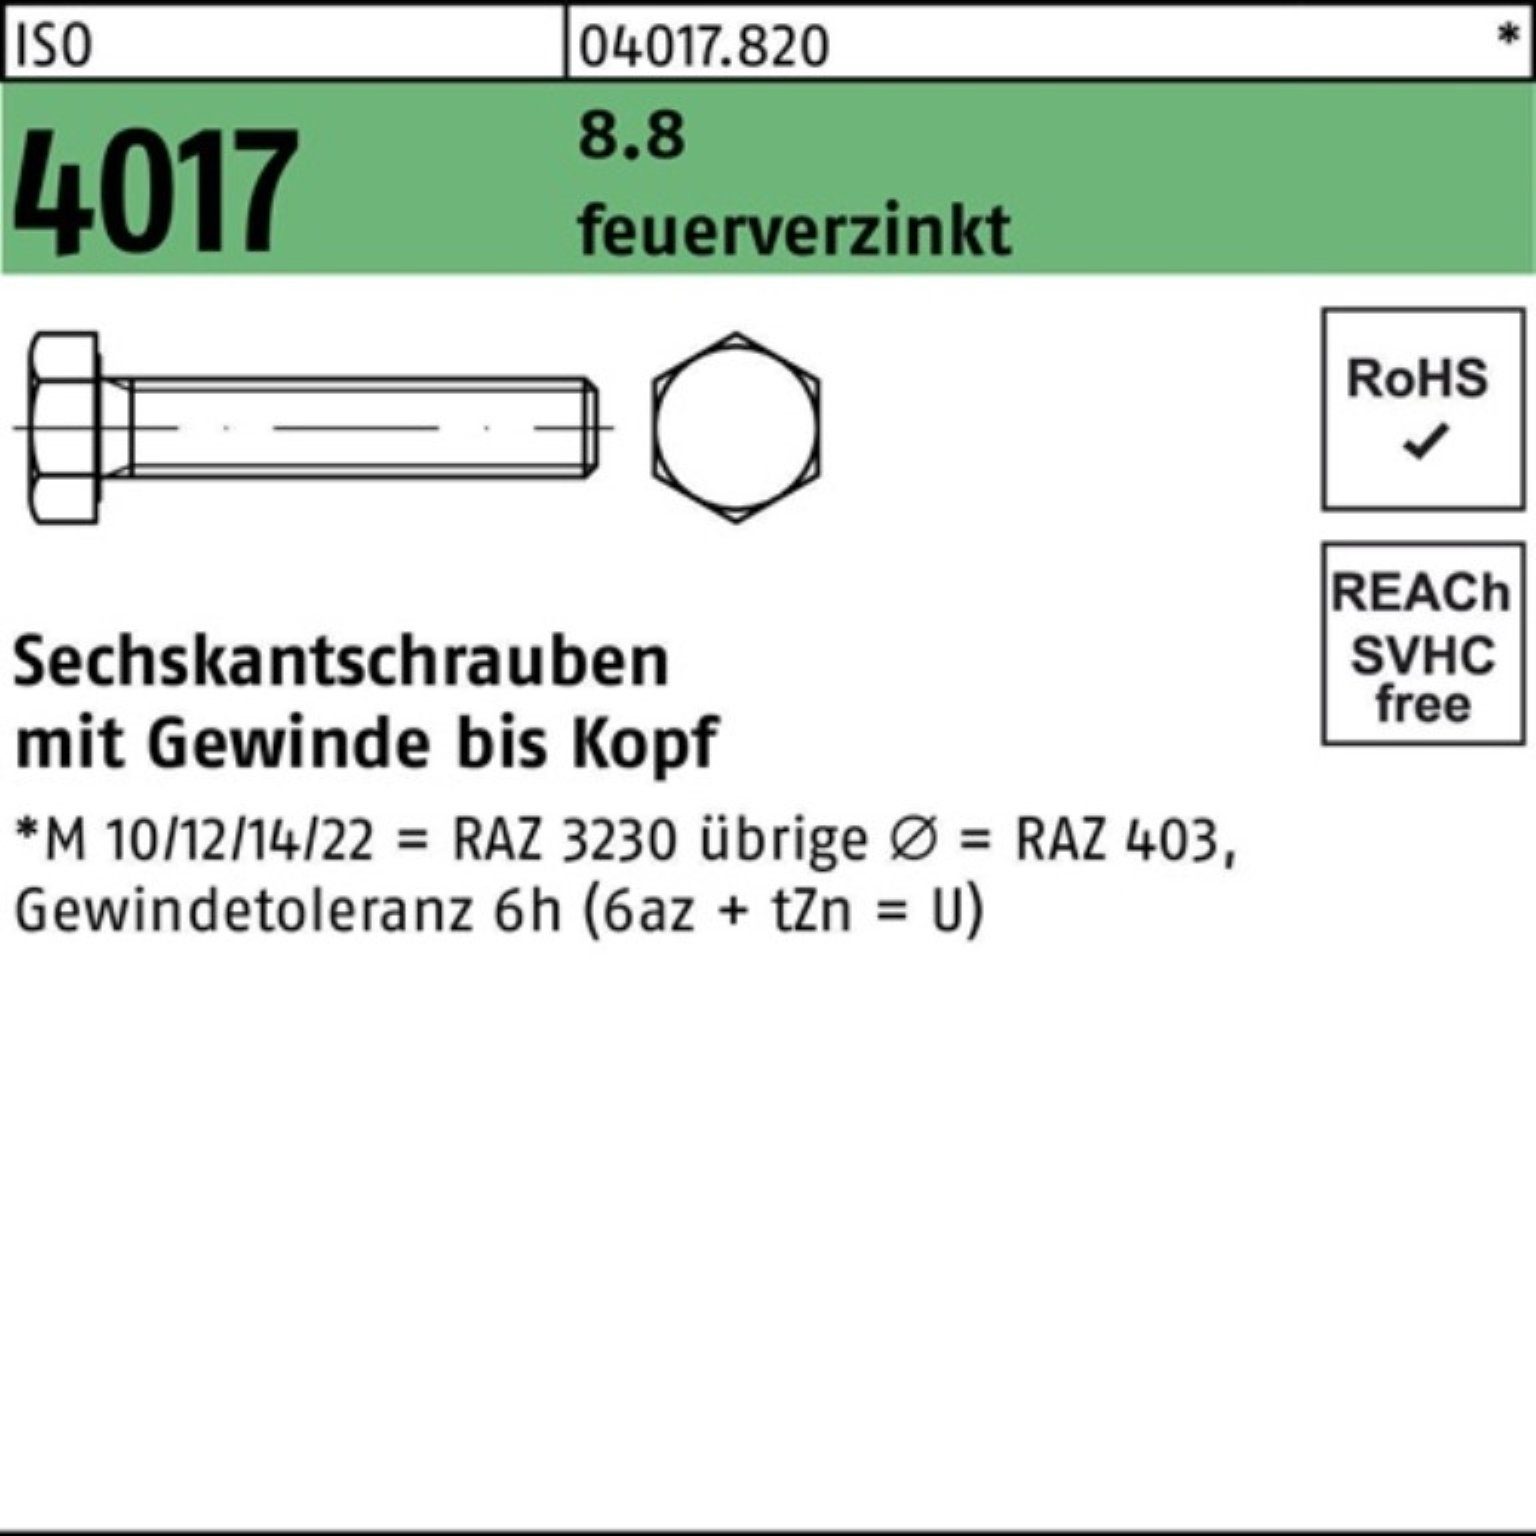 St Sechskantschraube M8x 200 12 Pack Bufab VG feuerverz. Sechskantschraube 4017 ISO 200er 8.8